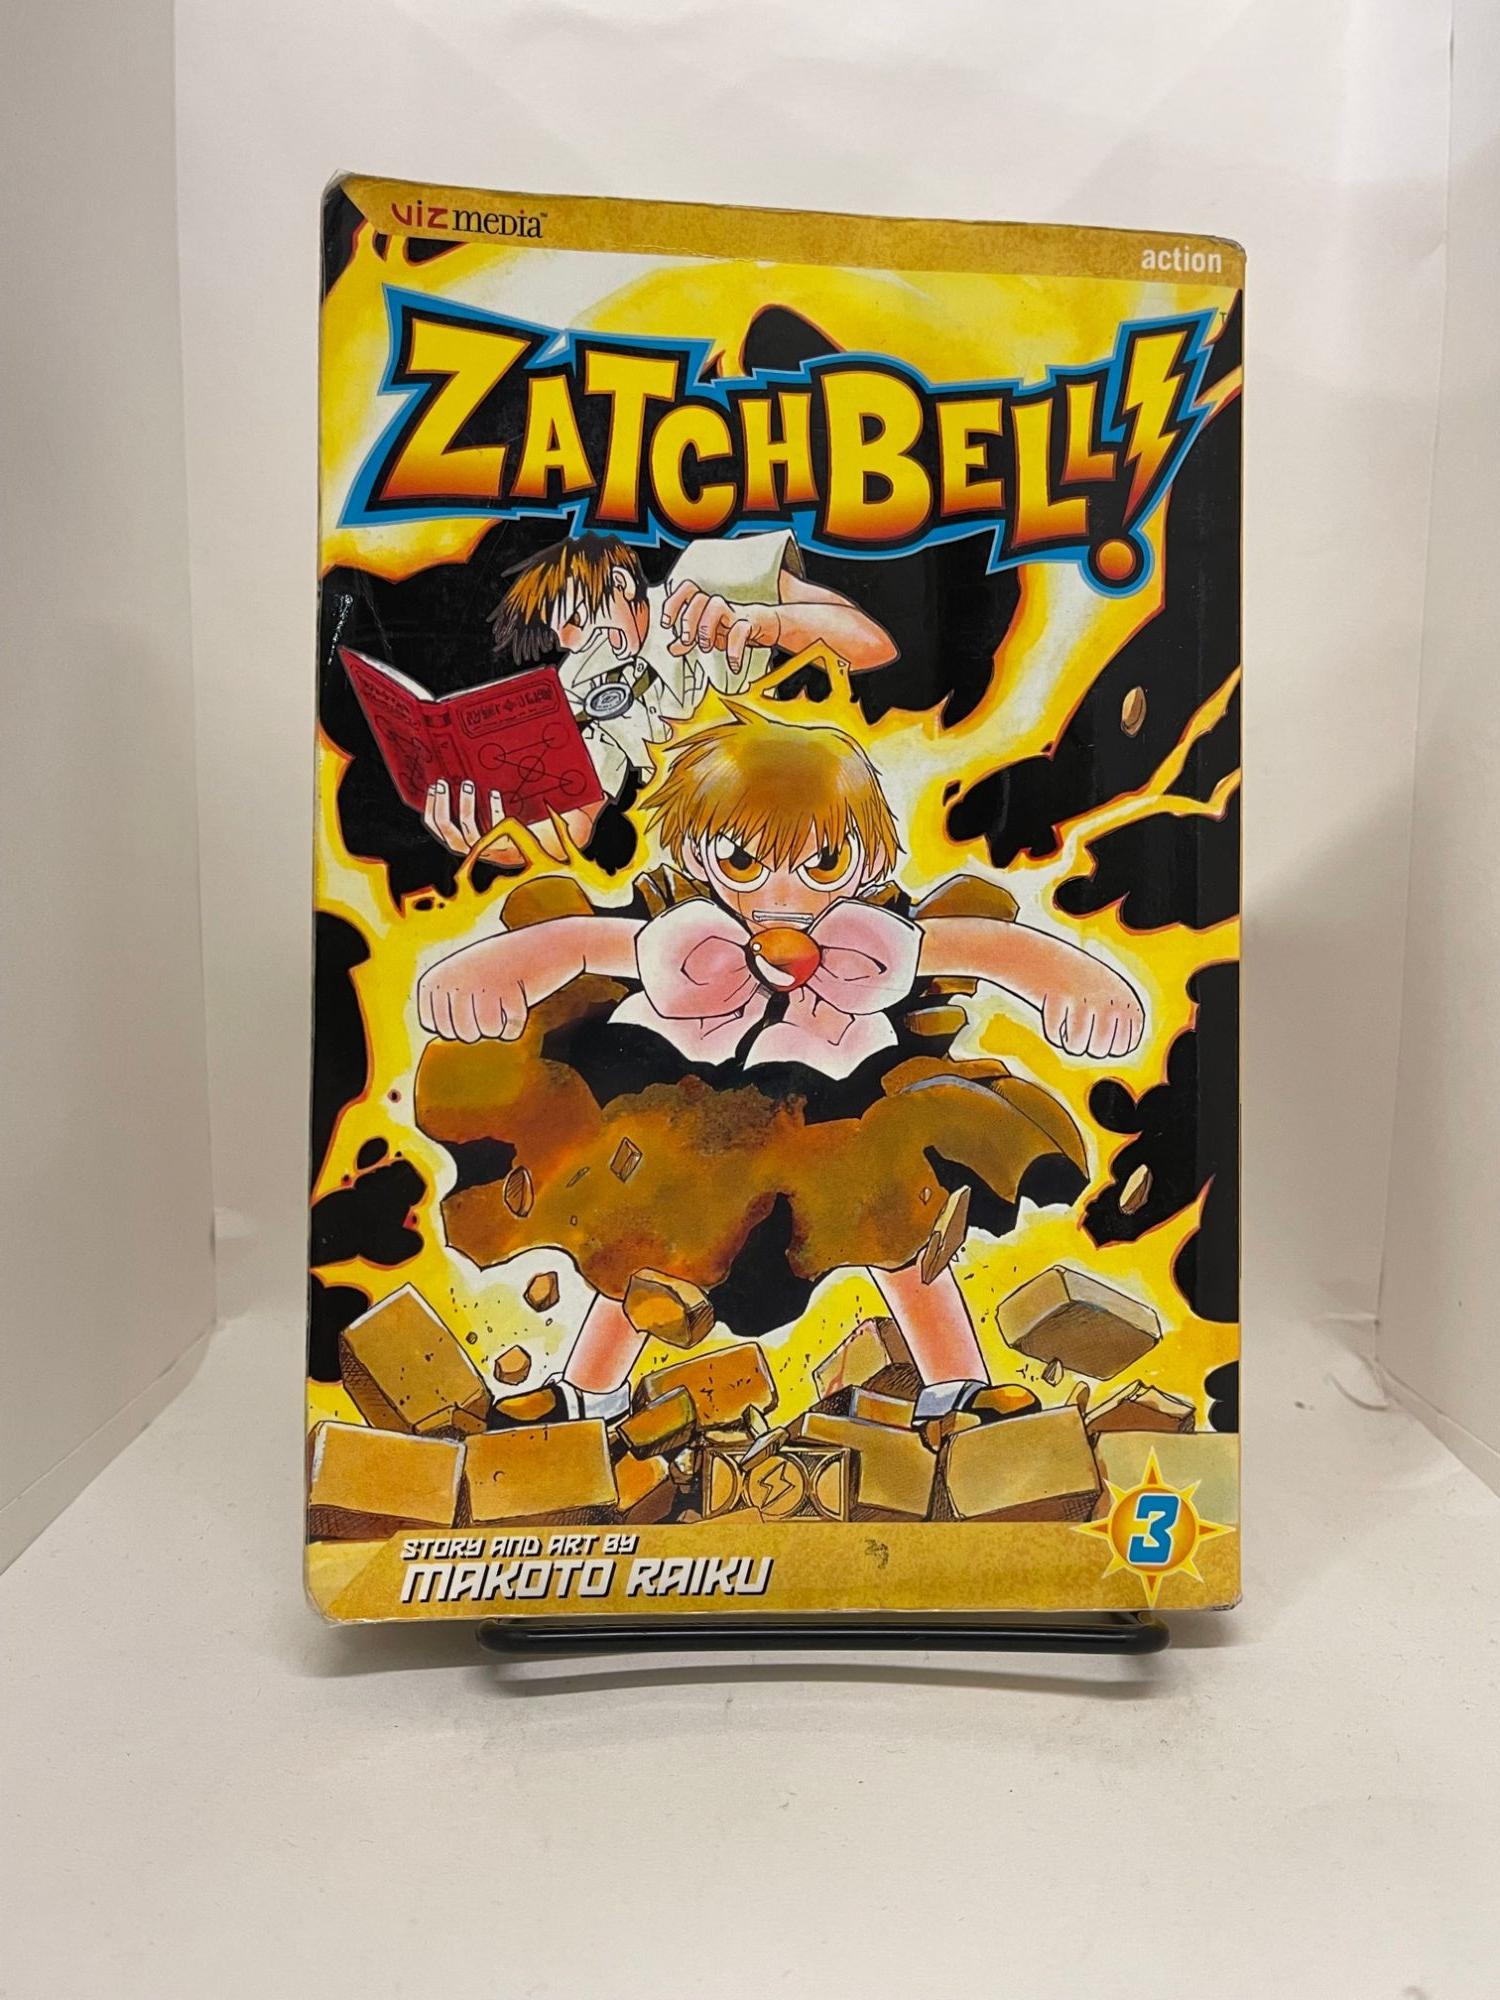 Zatch Bell! Vol. 9